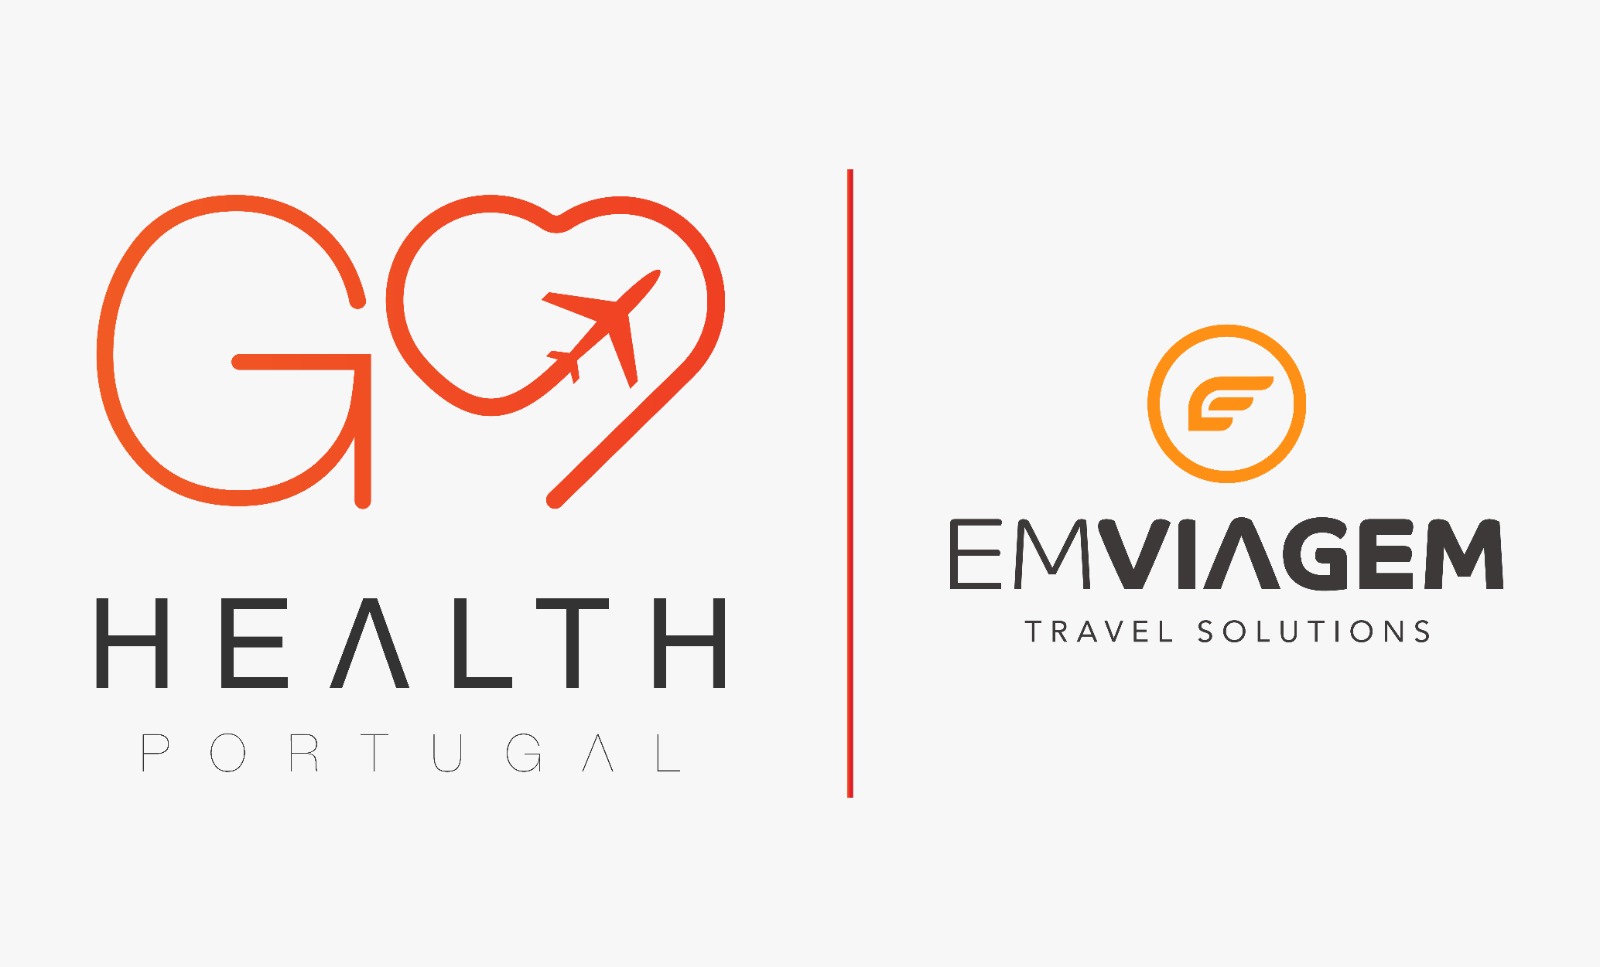 Emviagem - Travel Solutions